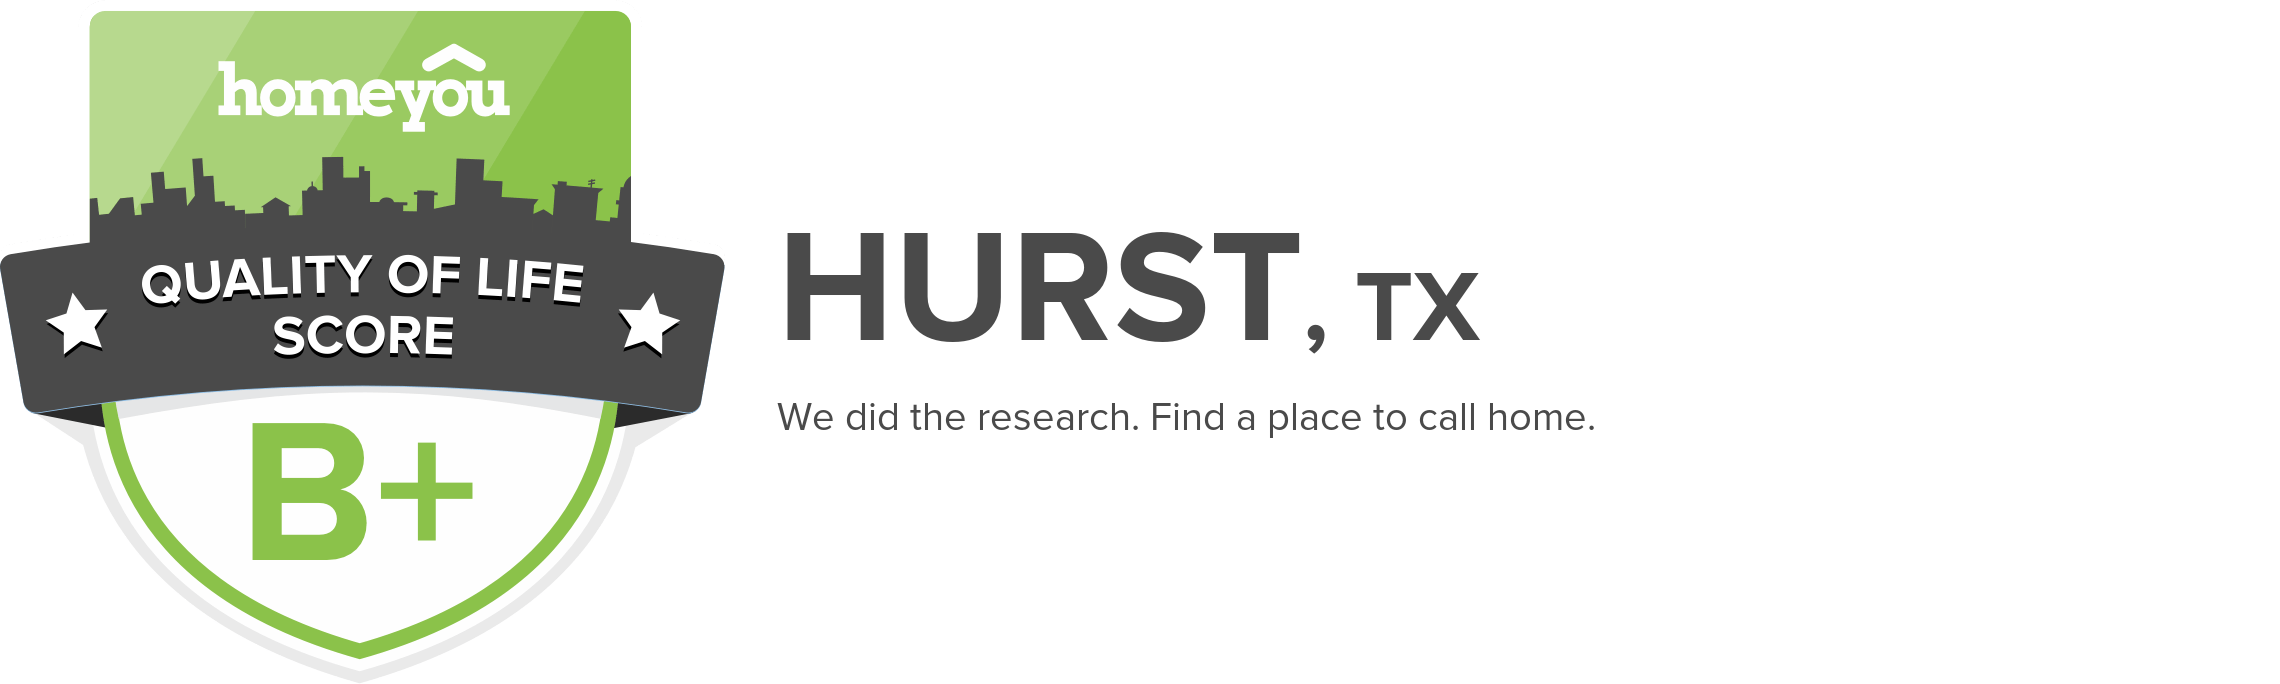 Hurst, TX